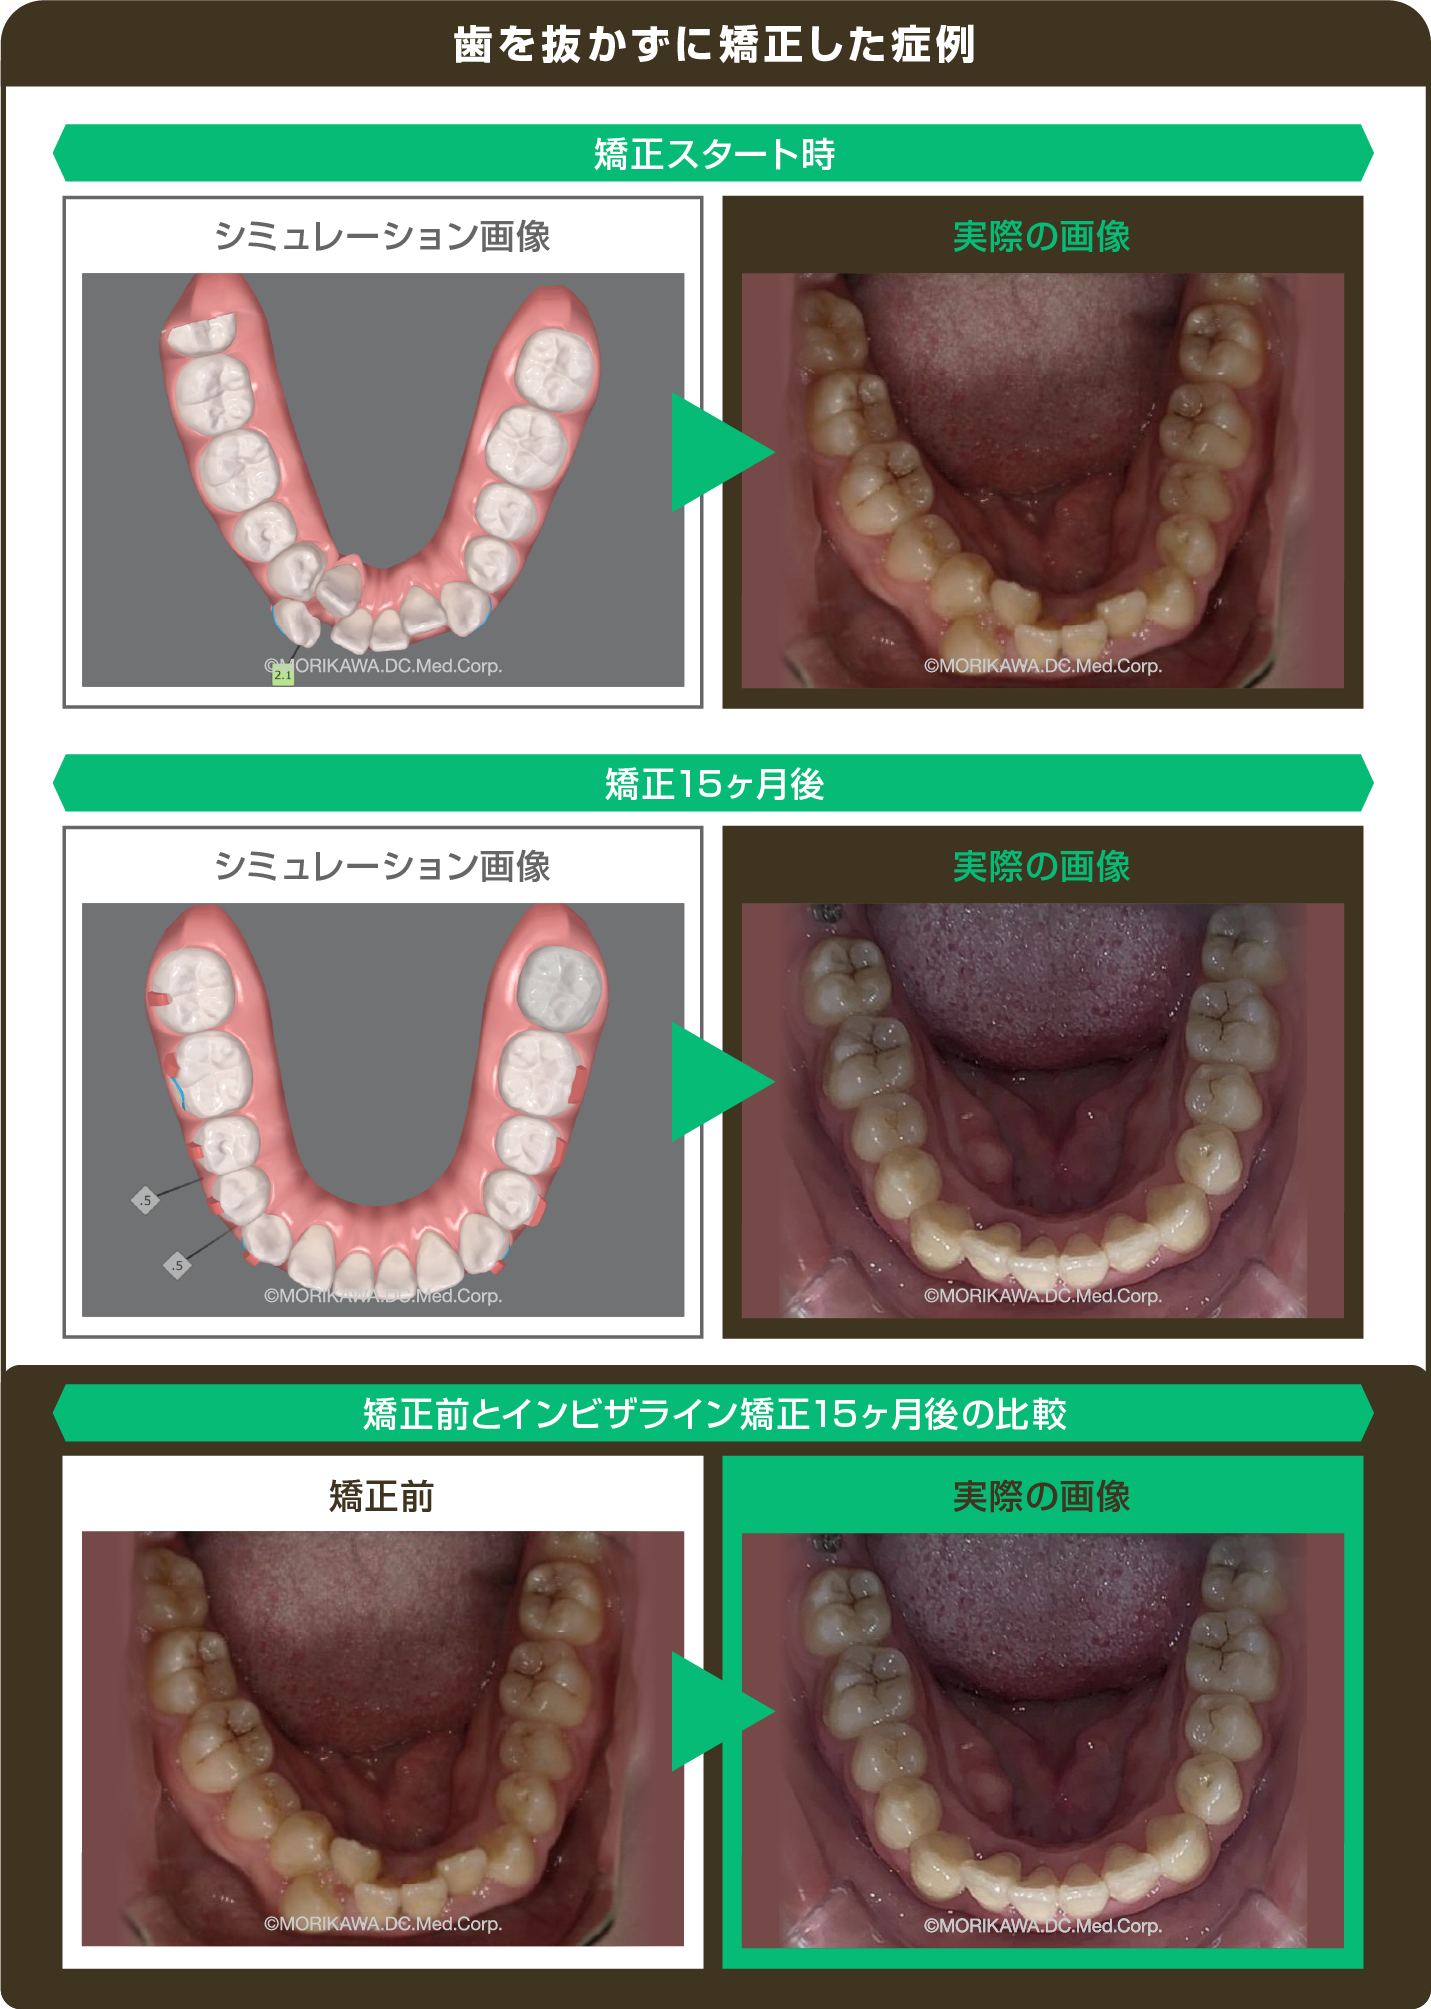 歯を抜かずに矯正した症例